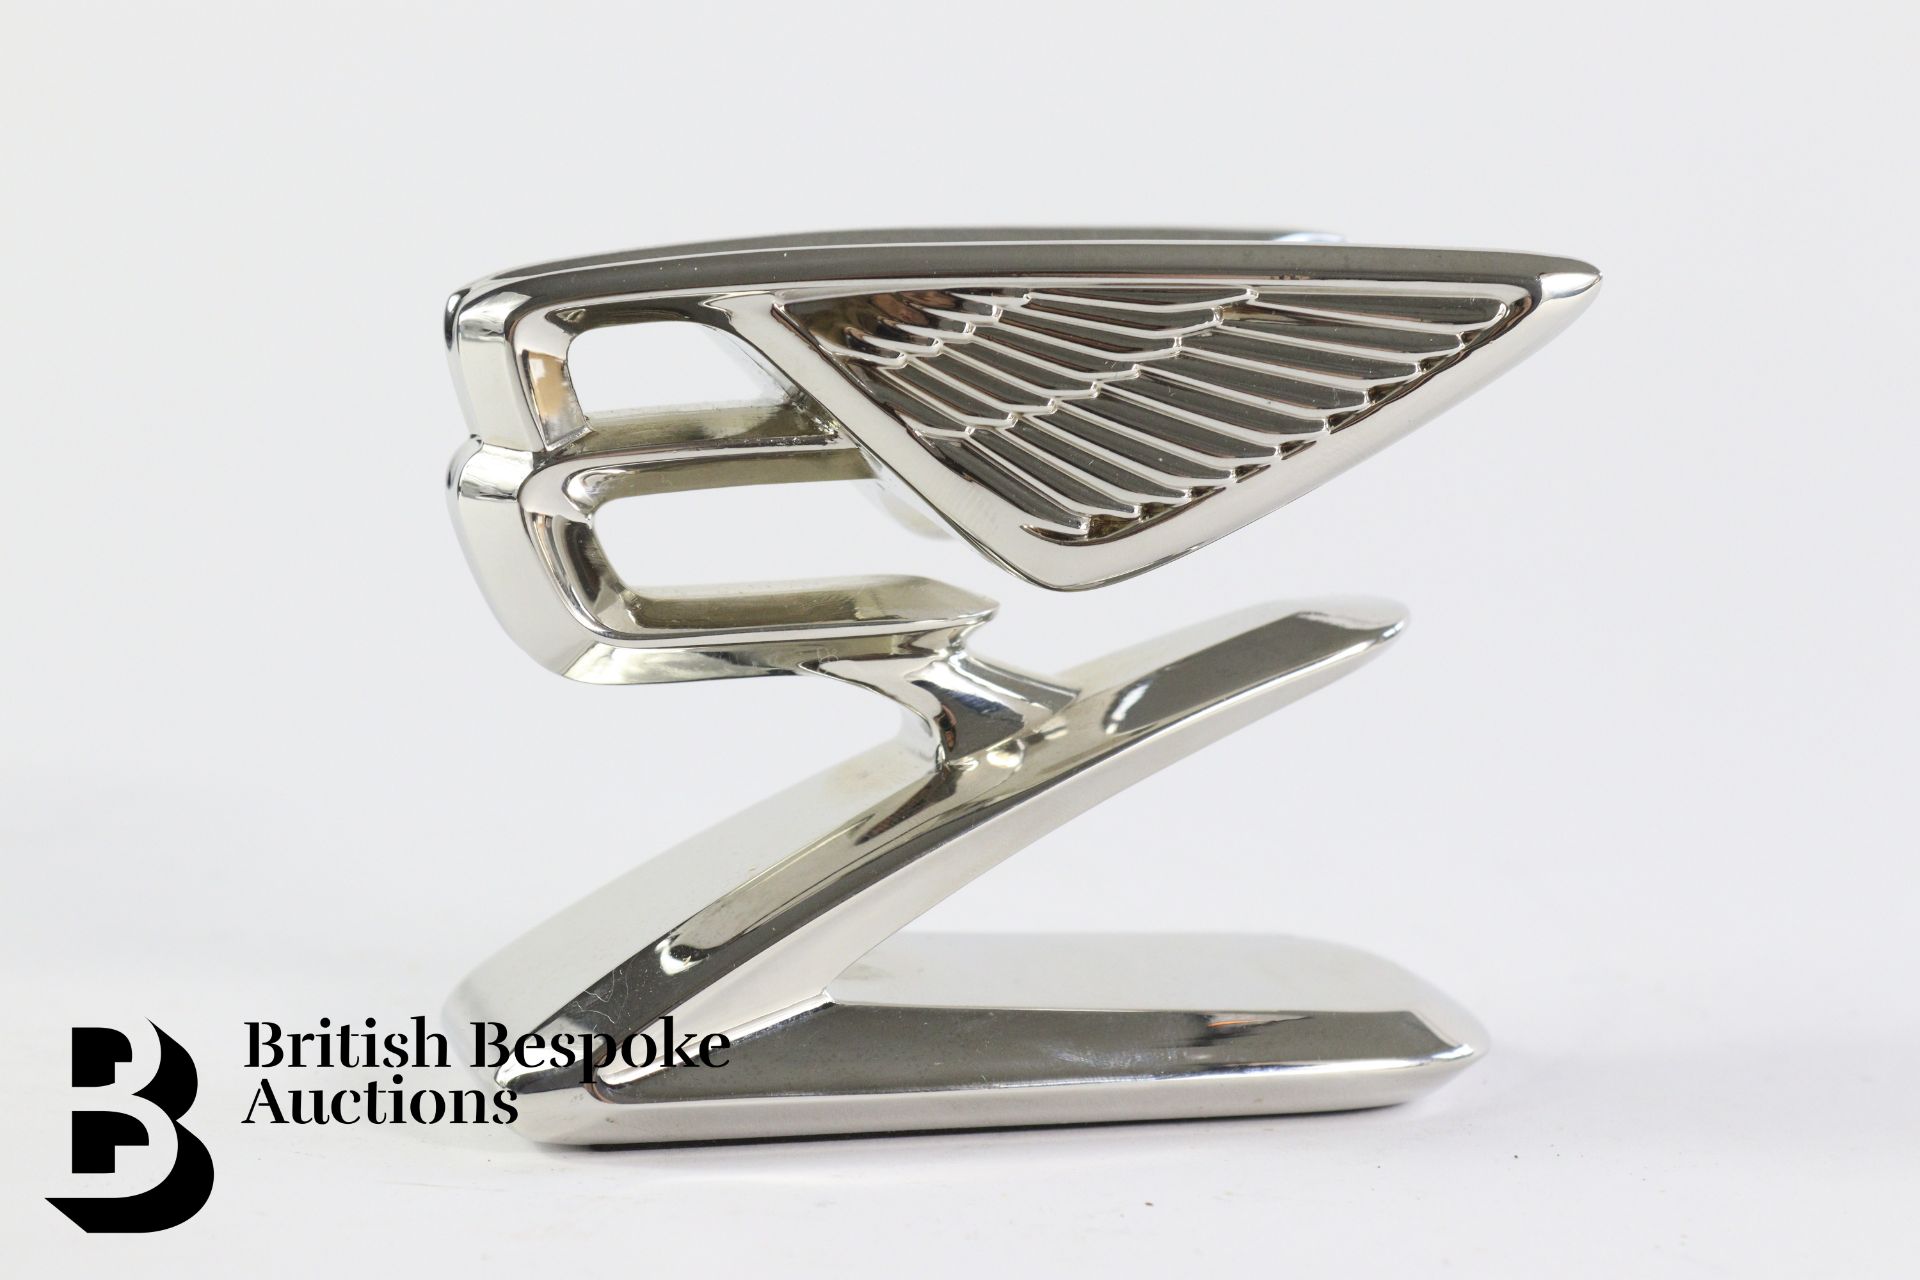 Stylised Bentley Flying B - Image 2 of 4